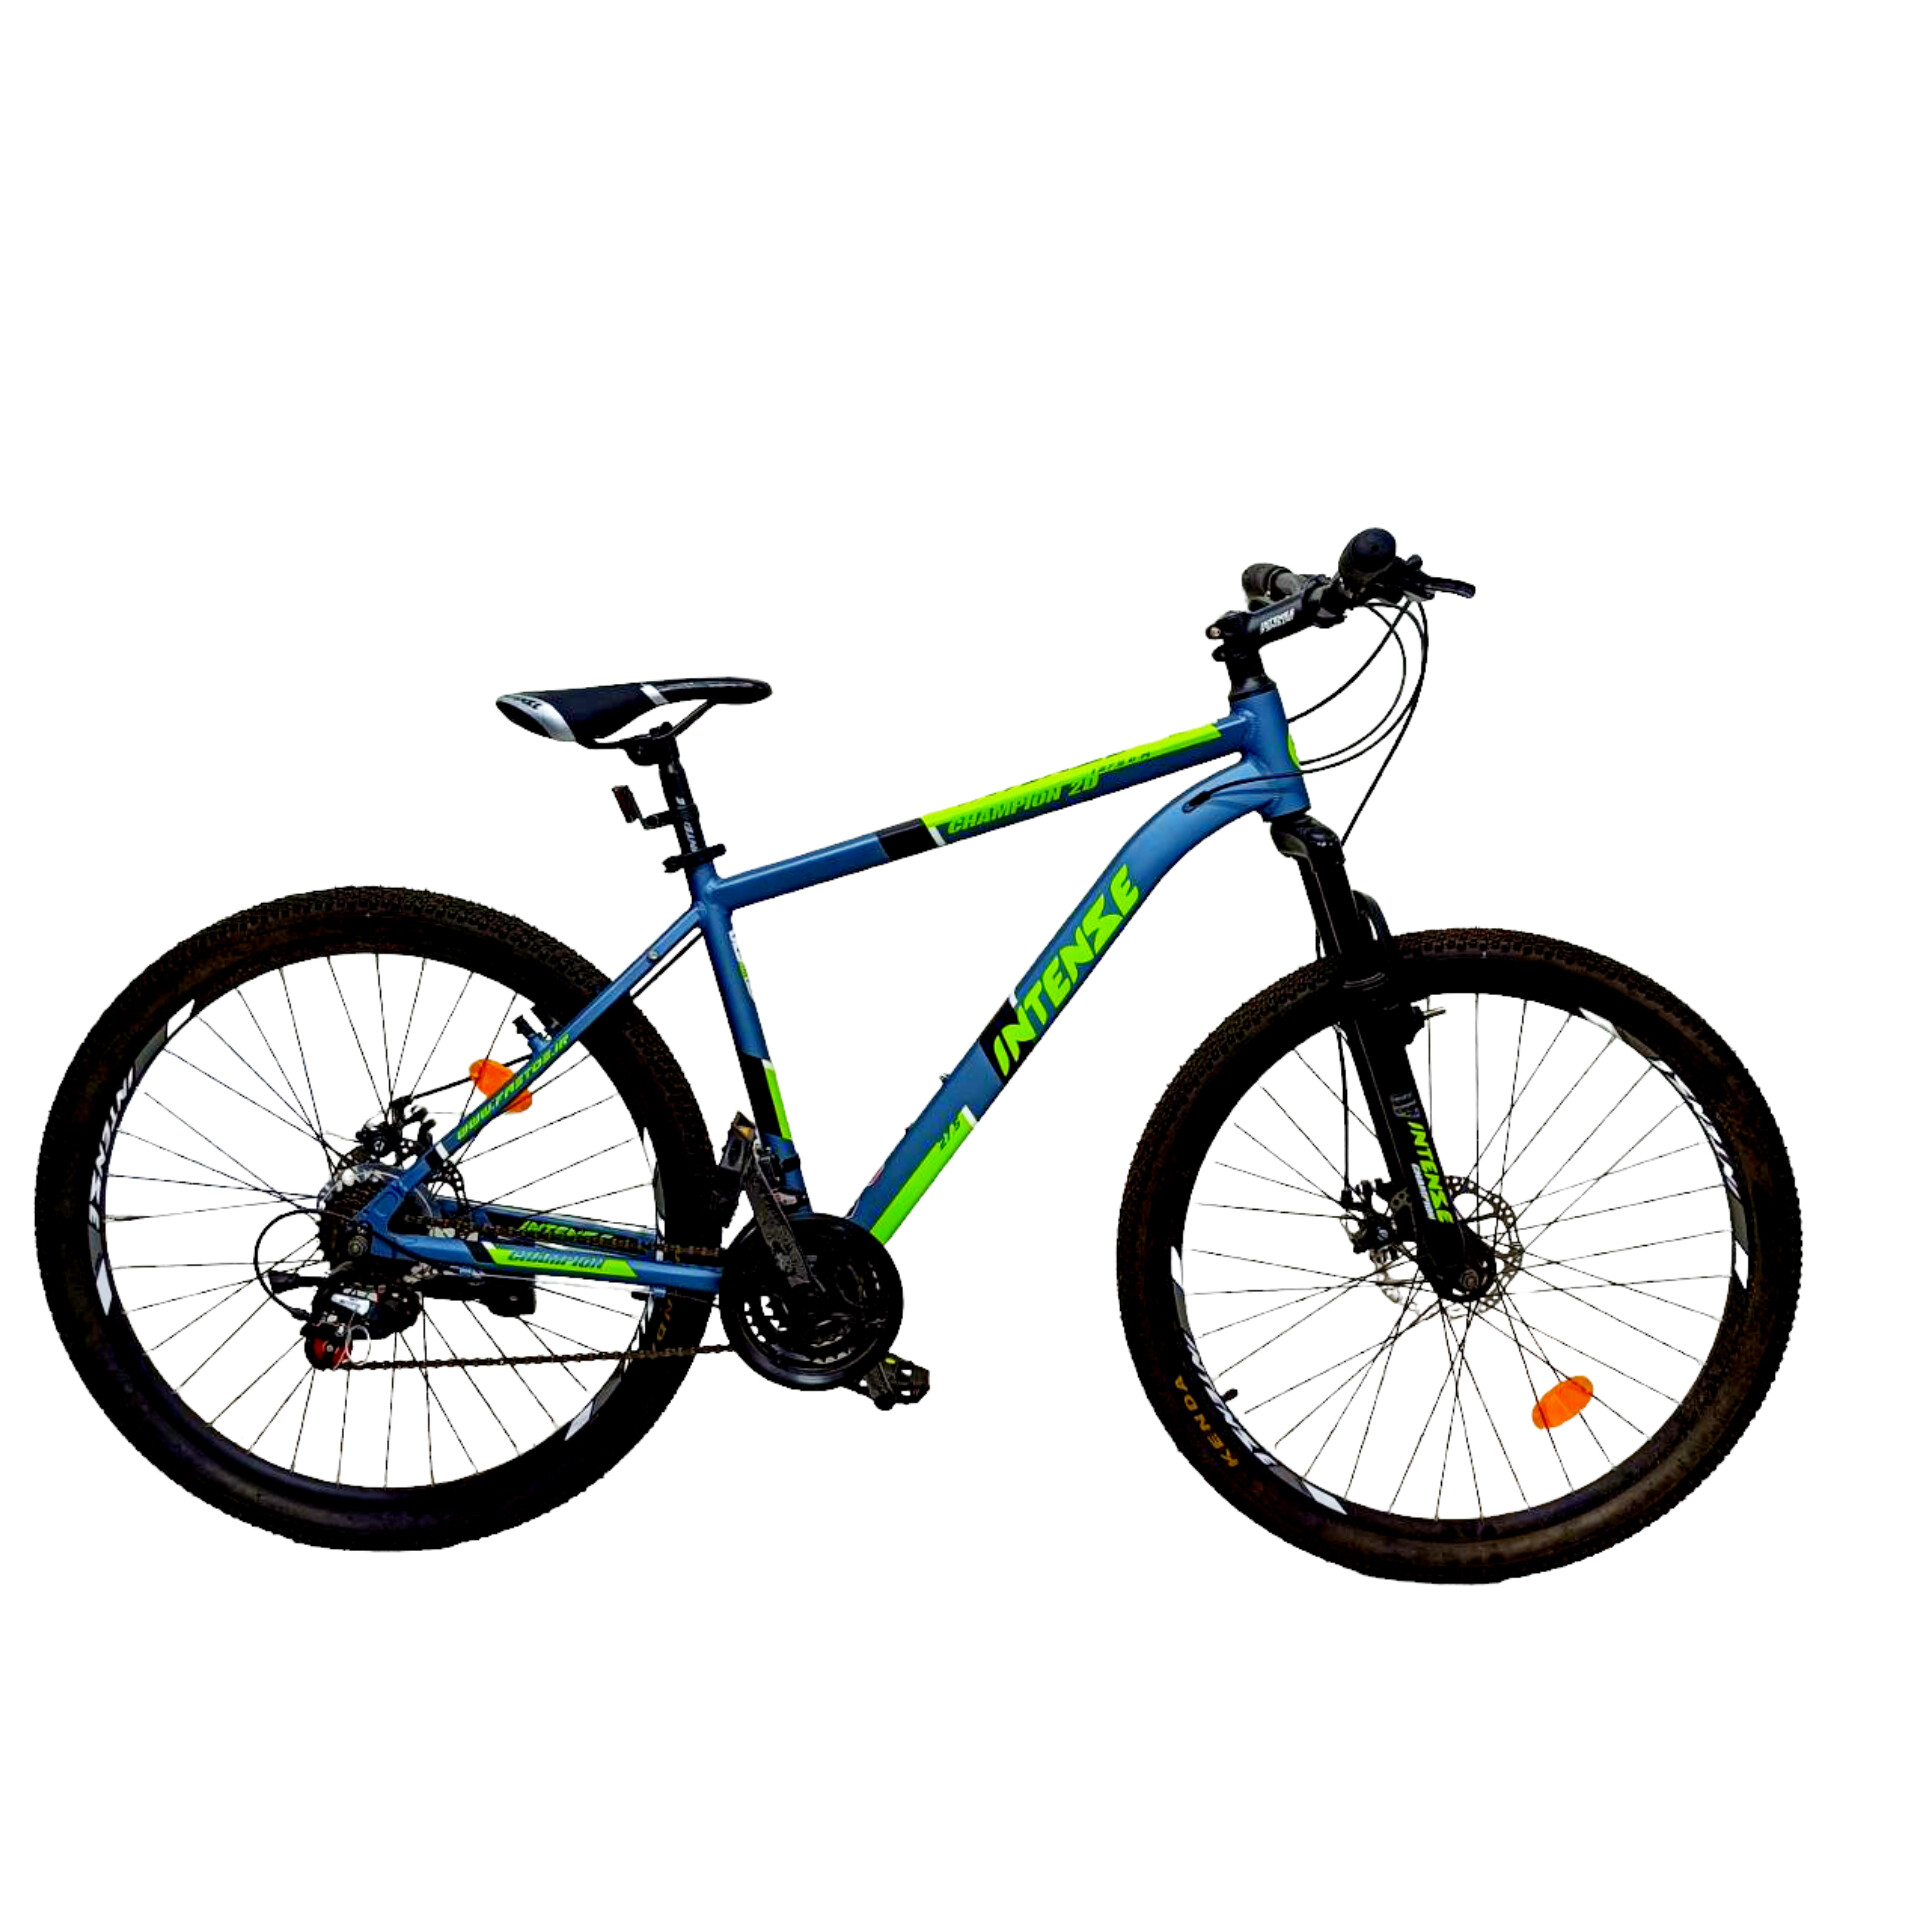 نکته خرید - قیمت روز دوچرخه کوهستان اینتنس مدل CHAMPION 2D سایز طوقه 27.5 خرید